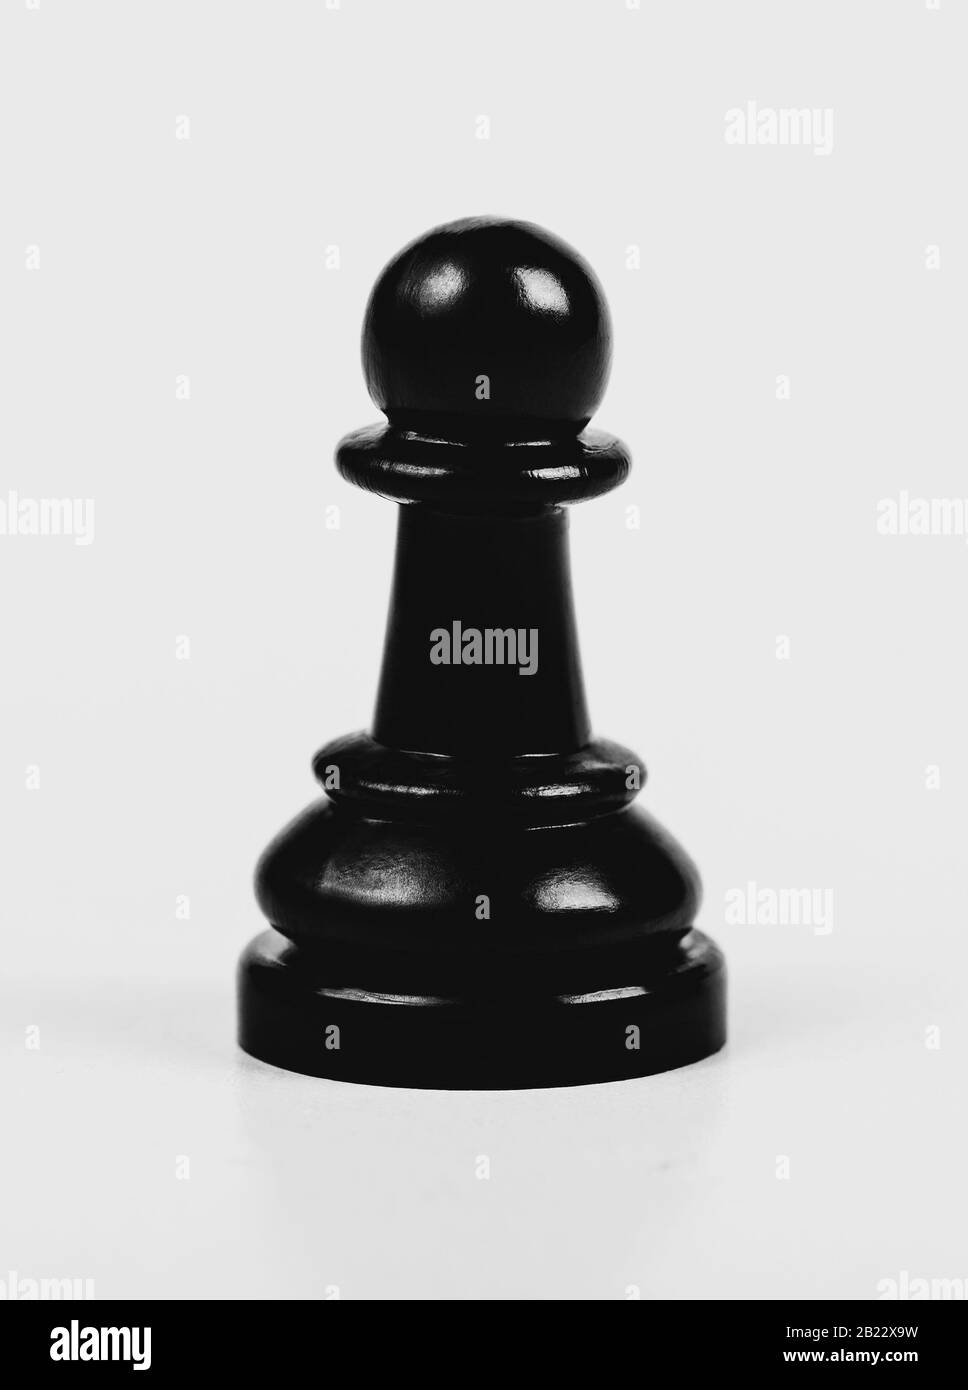 Un seul pion noir brillant d'échecs isolé, mat, faible contraste. Un seul morceau d'échecs sur fond gris, macro, résumé. Jeu d'échecs Univers Banque D'Images